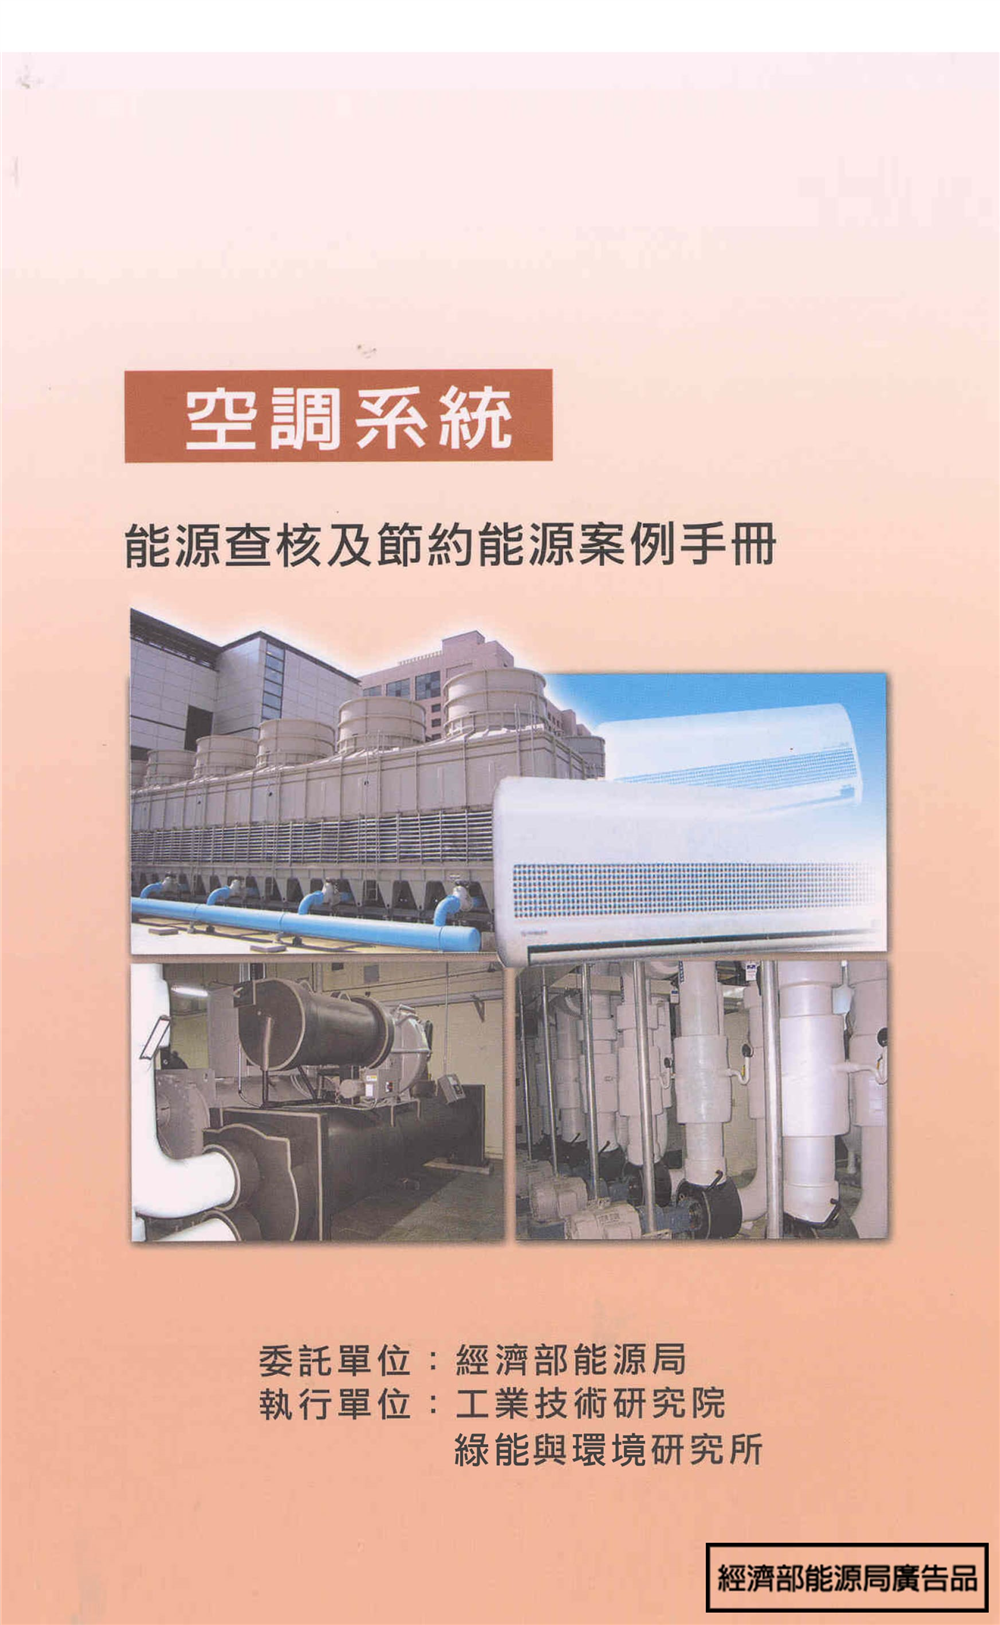 能源查核與節約能源案例手冊-空調系統 的封面